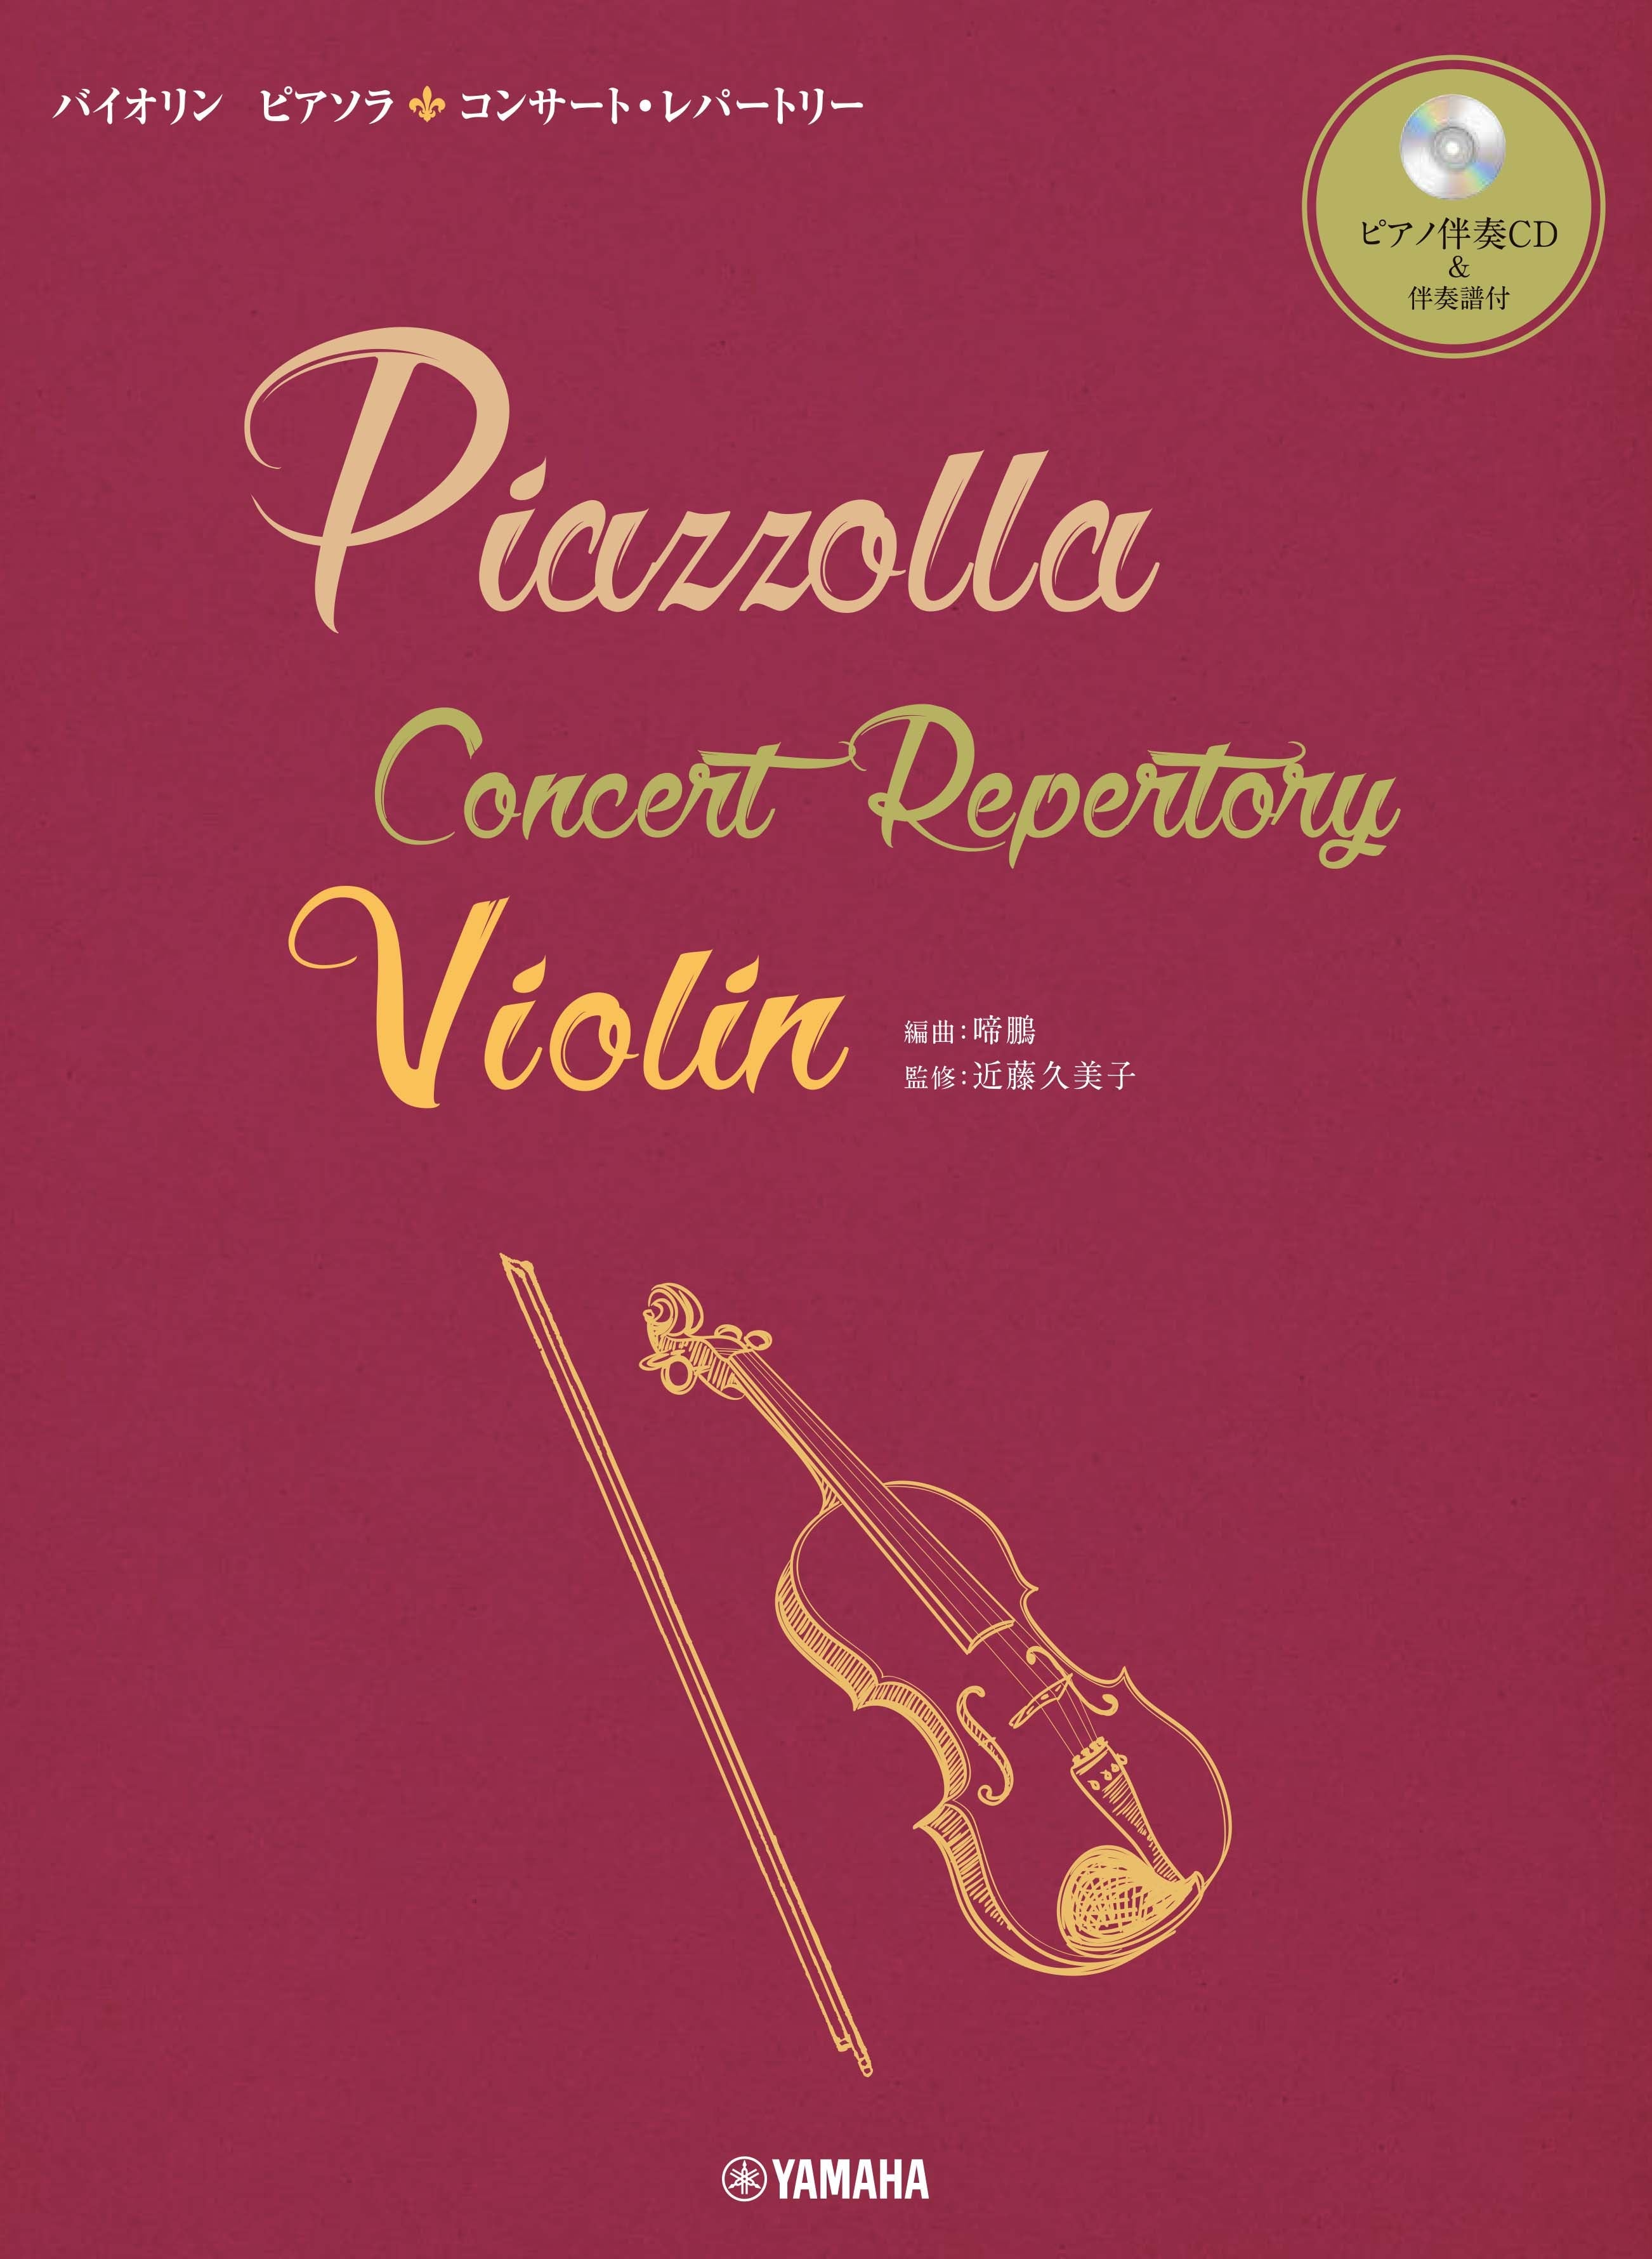 バイオリン ピアソラ コンサート・レパートリー | ヤマハの楽譜通販サイト Sheet Music Store